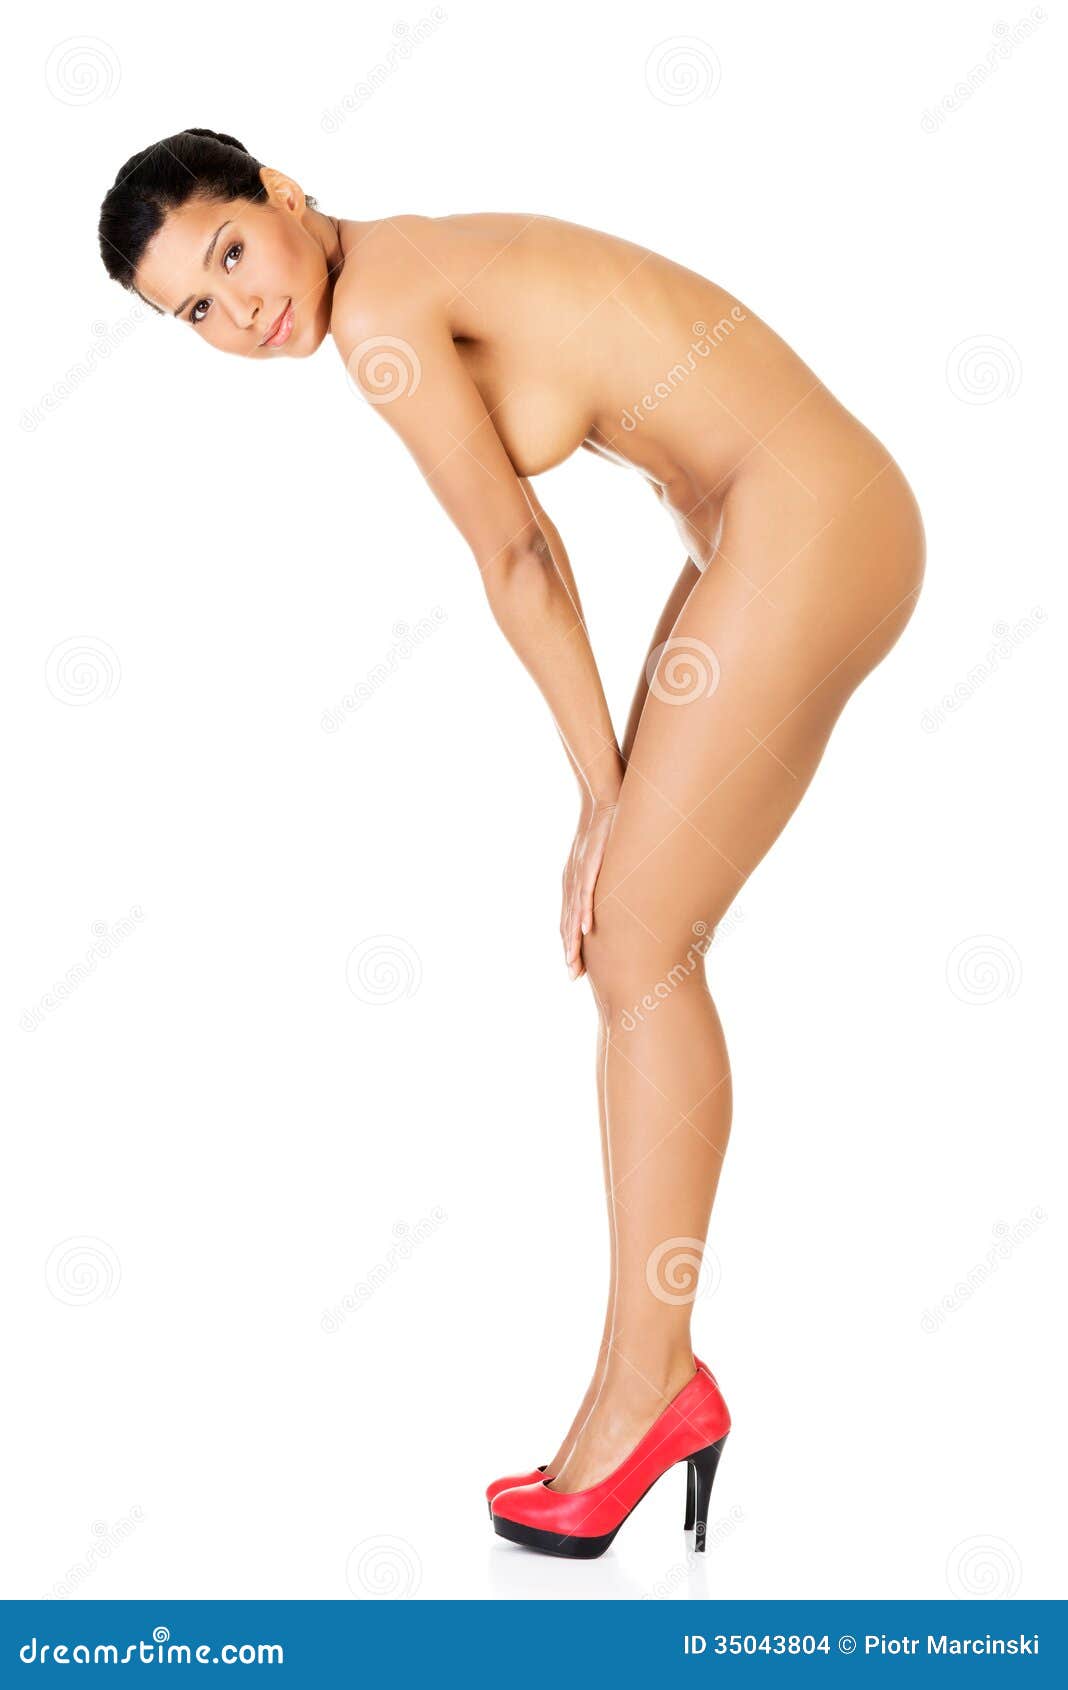 Nude women in high heels